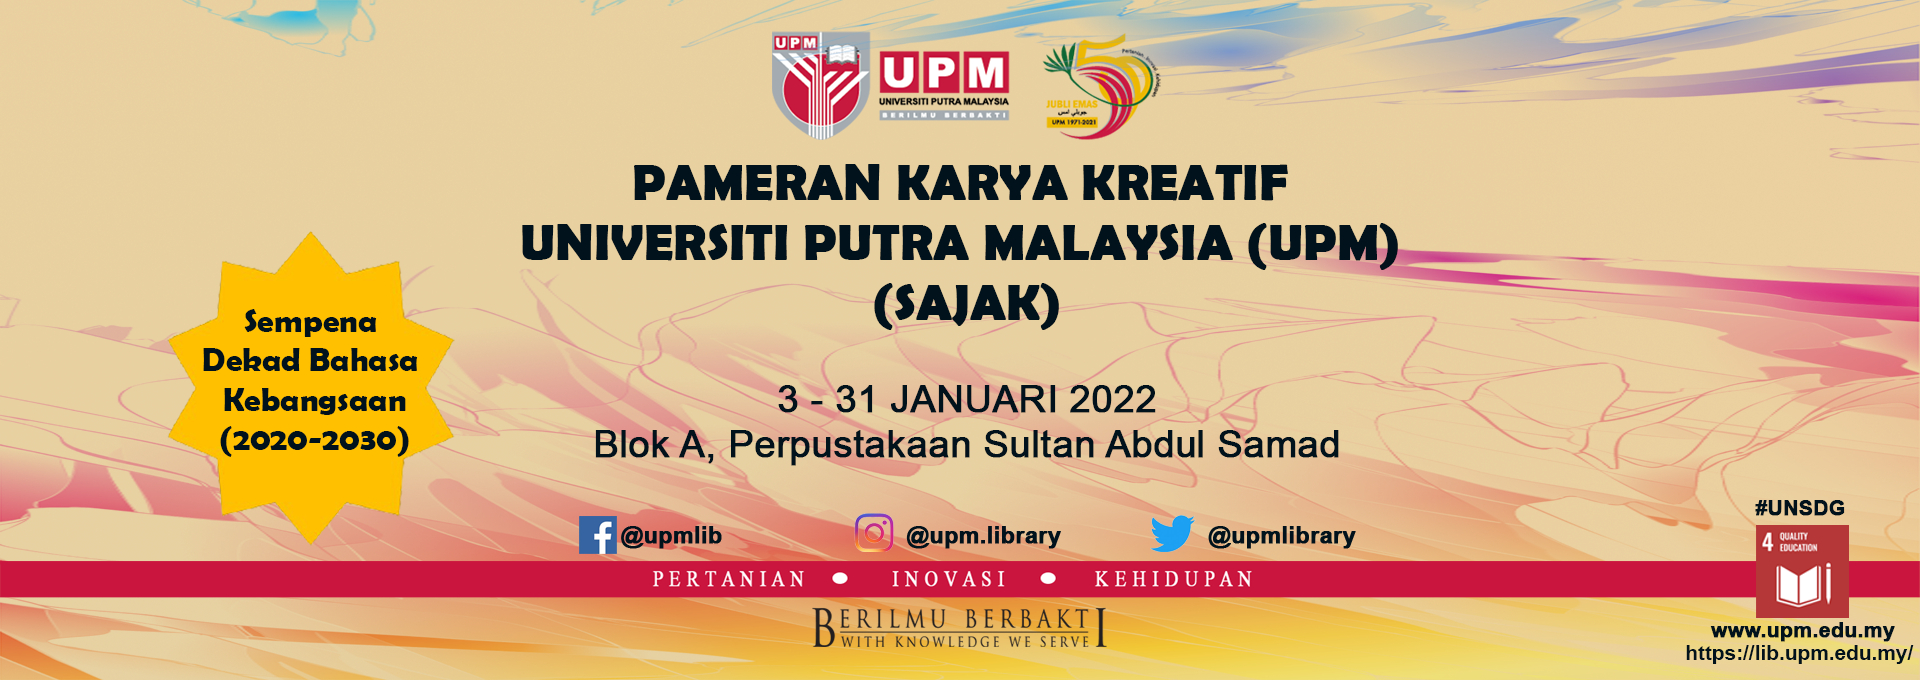 Banner Pameran Karya Kreatif UPM (Sajak)